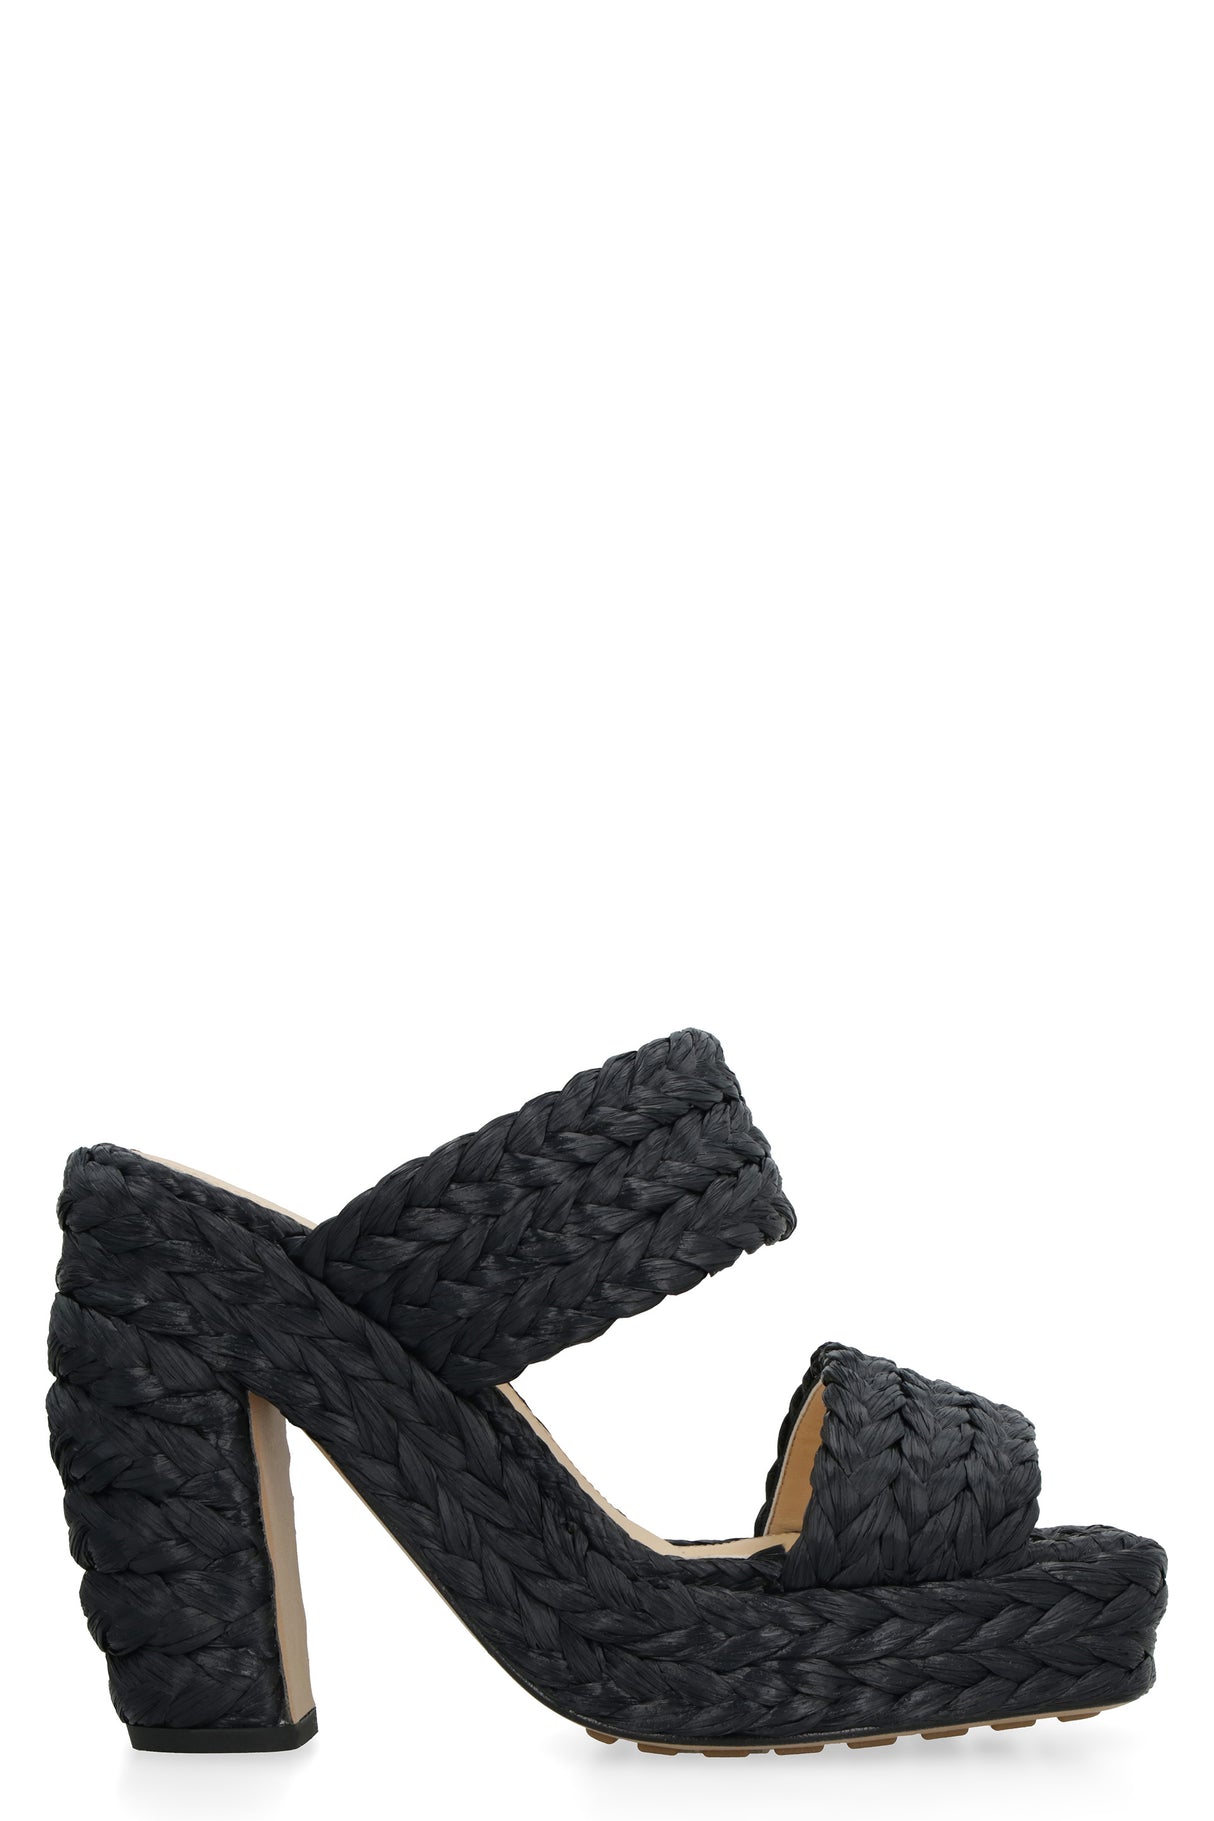 Giày cao gót bằng raffia màu đen dành cho phụ nữ - Bộ sưu tập mùa xuân hè 23